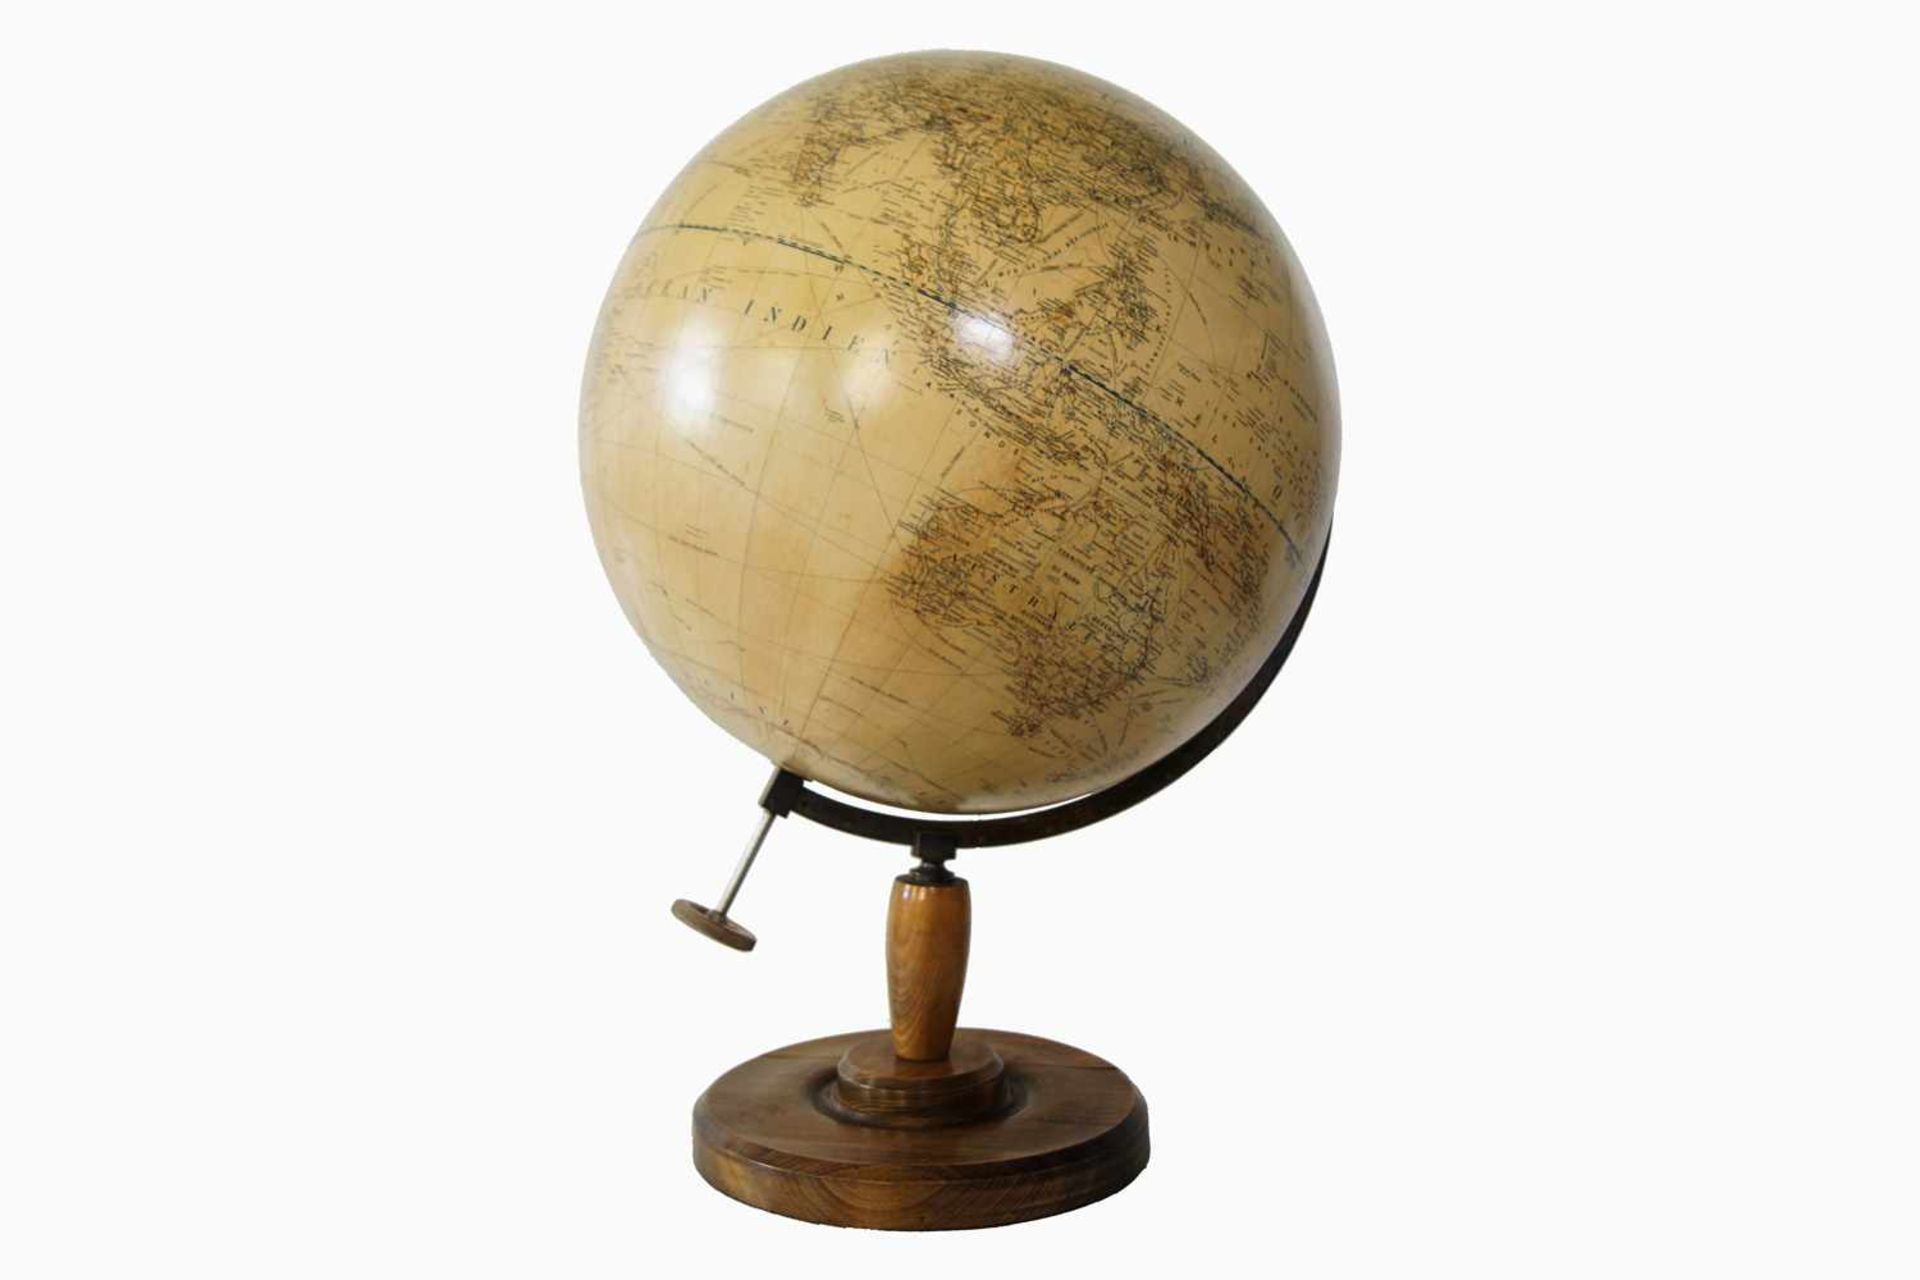 Großer Globus um 1940, 1:20000000, Girard Barrere und Thomas, Paris, Holz, Gips und Papier, montiert